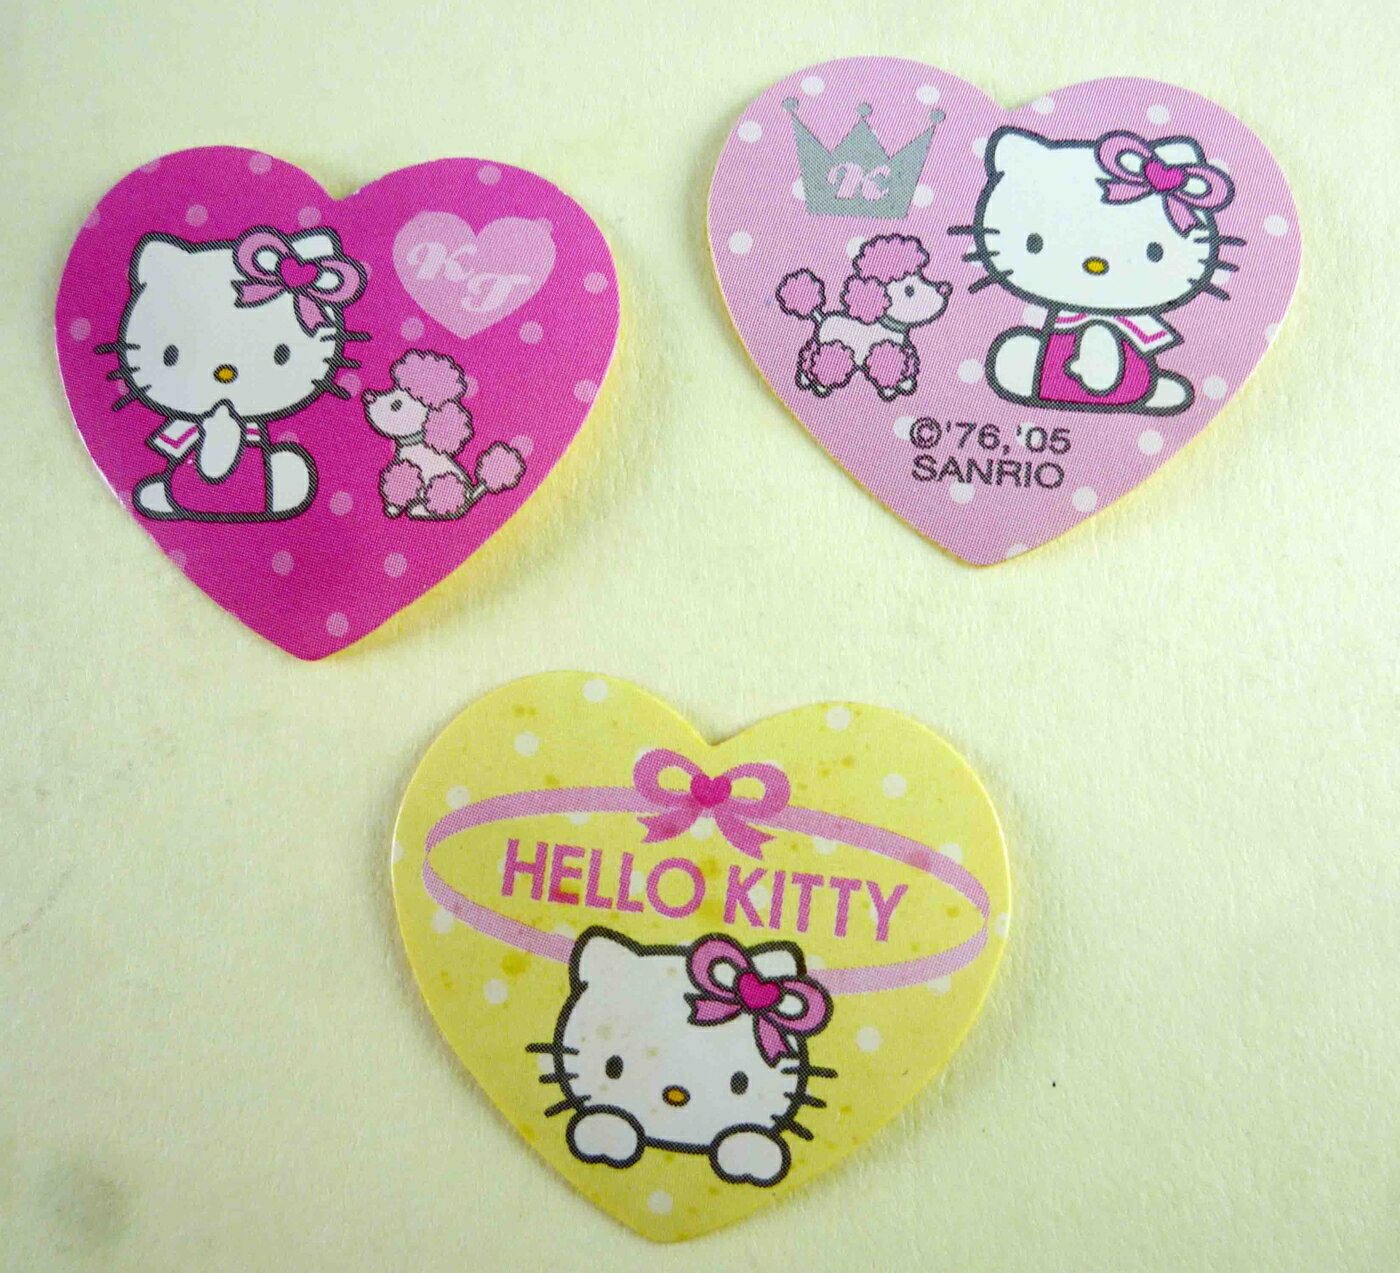 【震撼精品百貨】Hello Kitty 凱蒂貓 KITTY貼紙-心型貴賓狗 震撼日式精品百貨